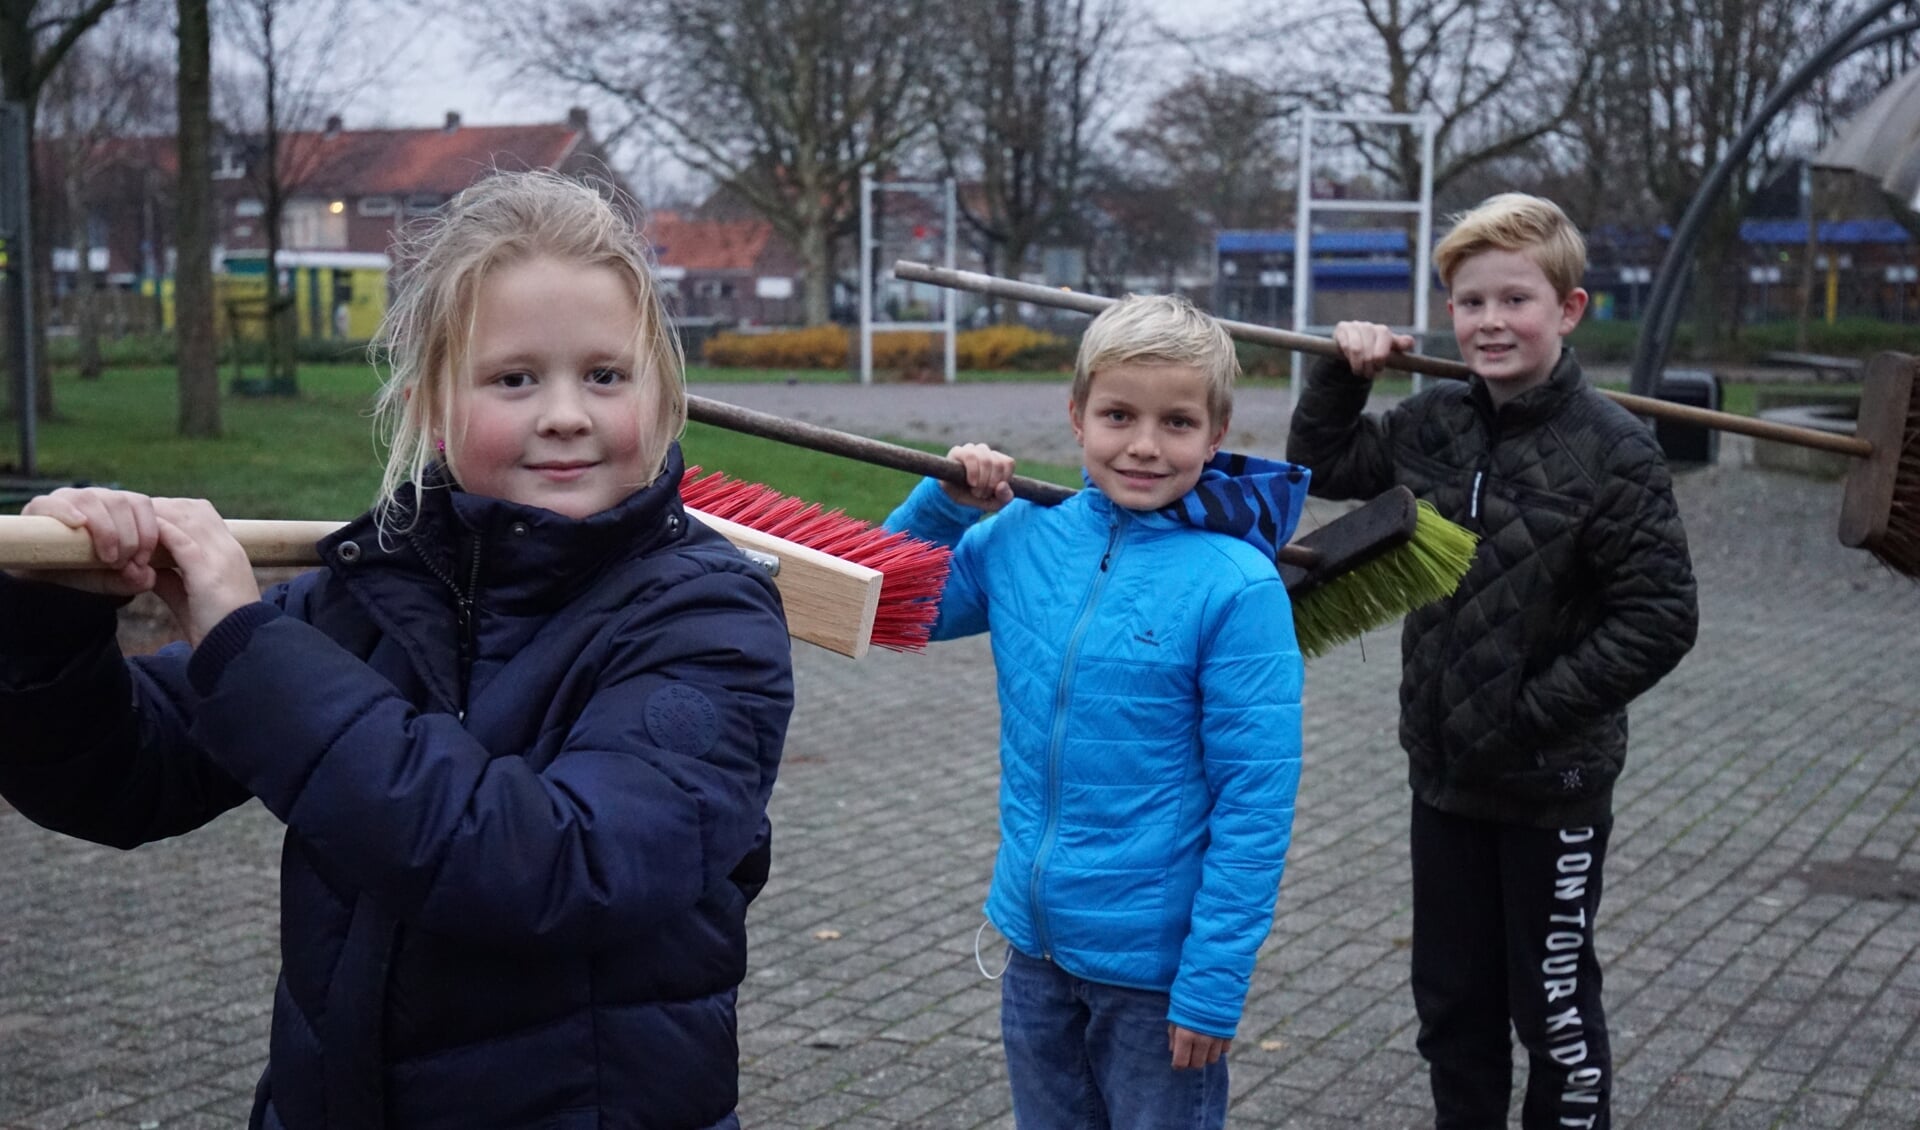 SuperSchoon-ambassadeurs Thijs, Evelien en Guido roepen iedereen op om mee te doen aan het nieuwjaarsvegen in Lisserbroek.